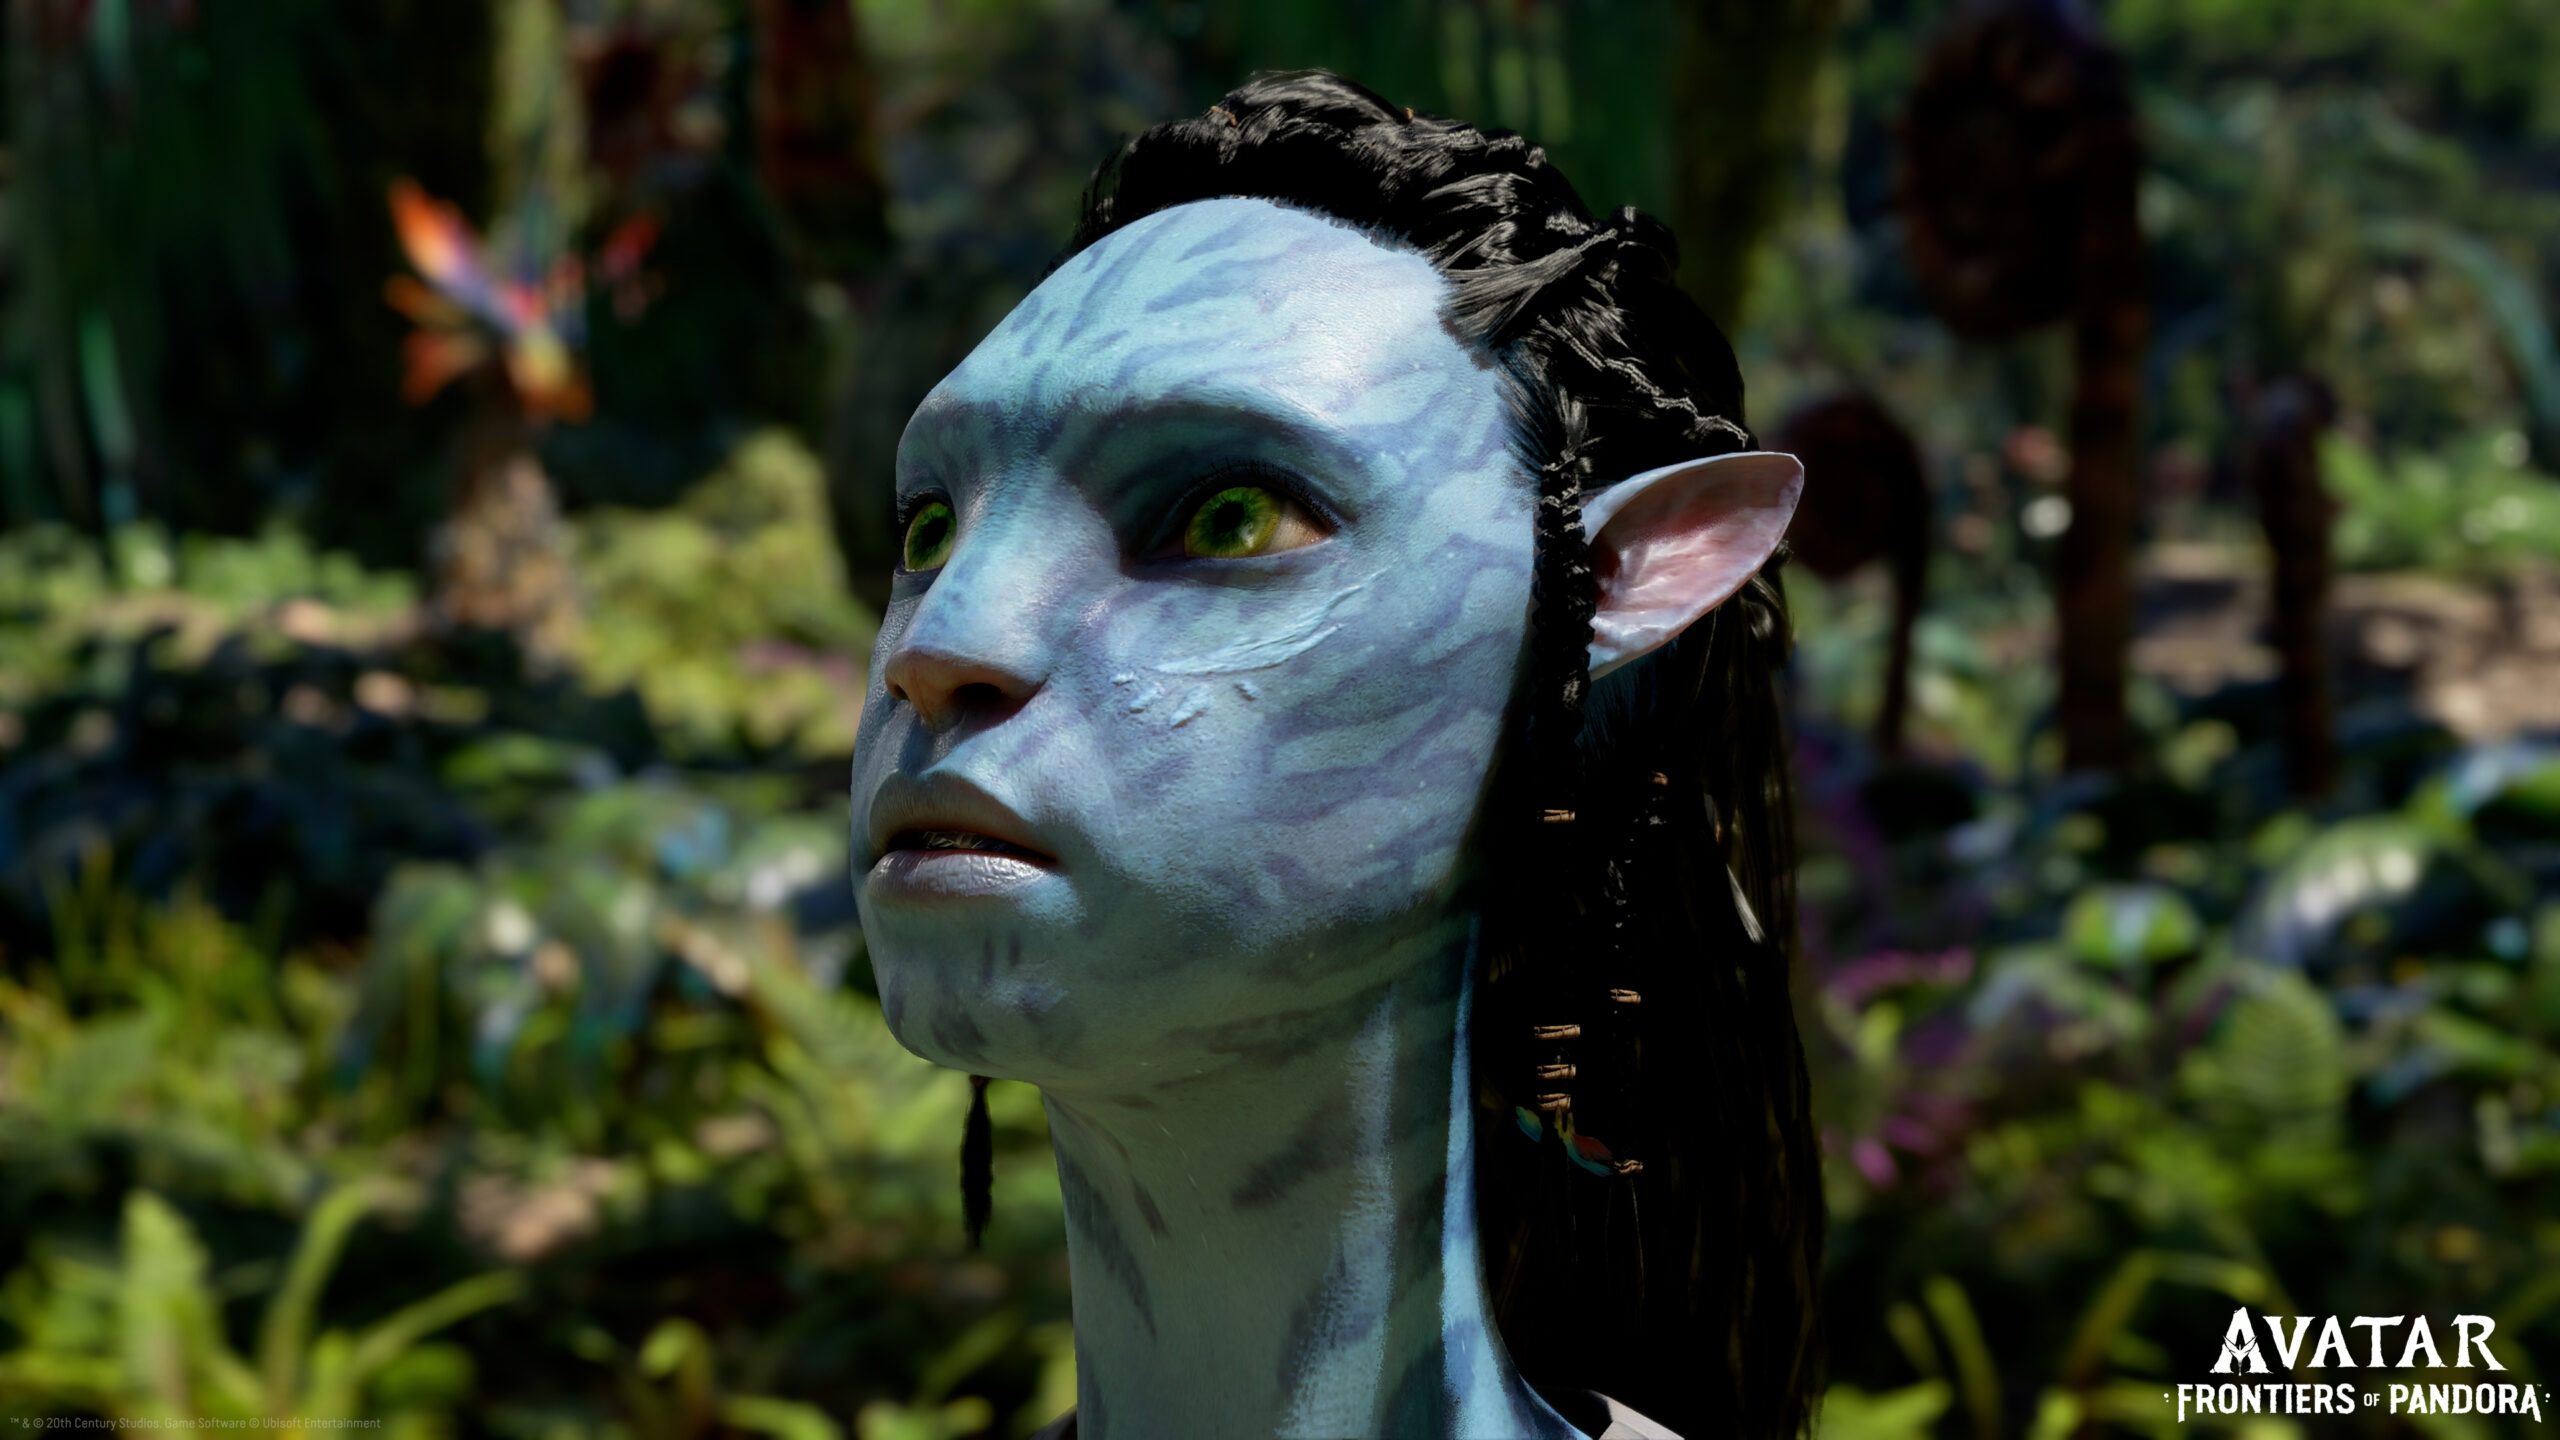 Avatar: Frontiers of Pandora — veja preço e requisitos para PC